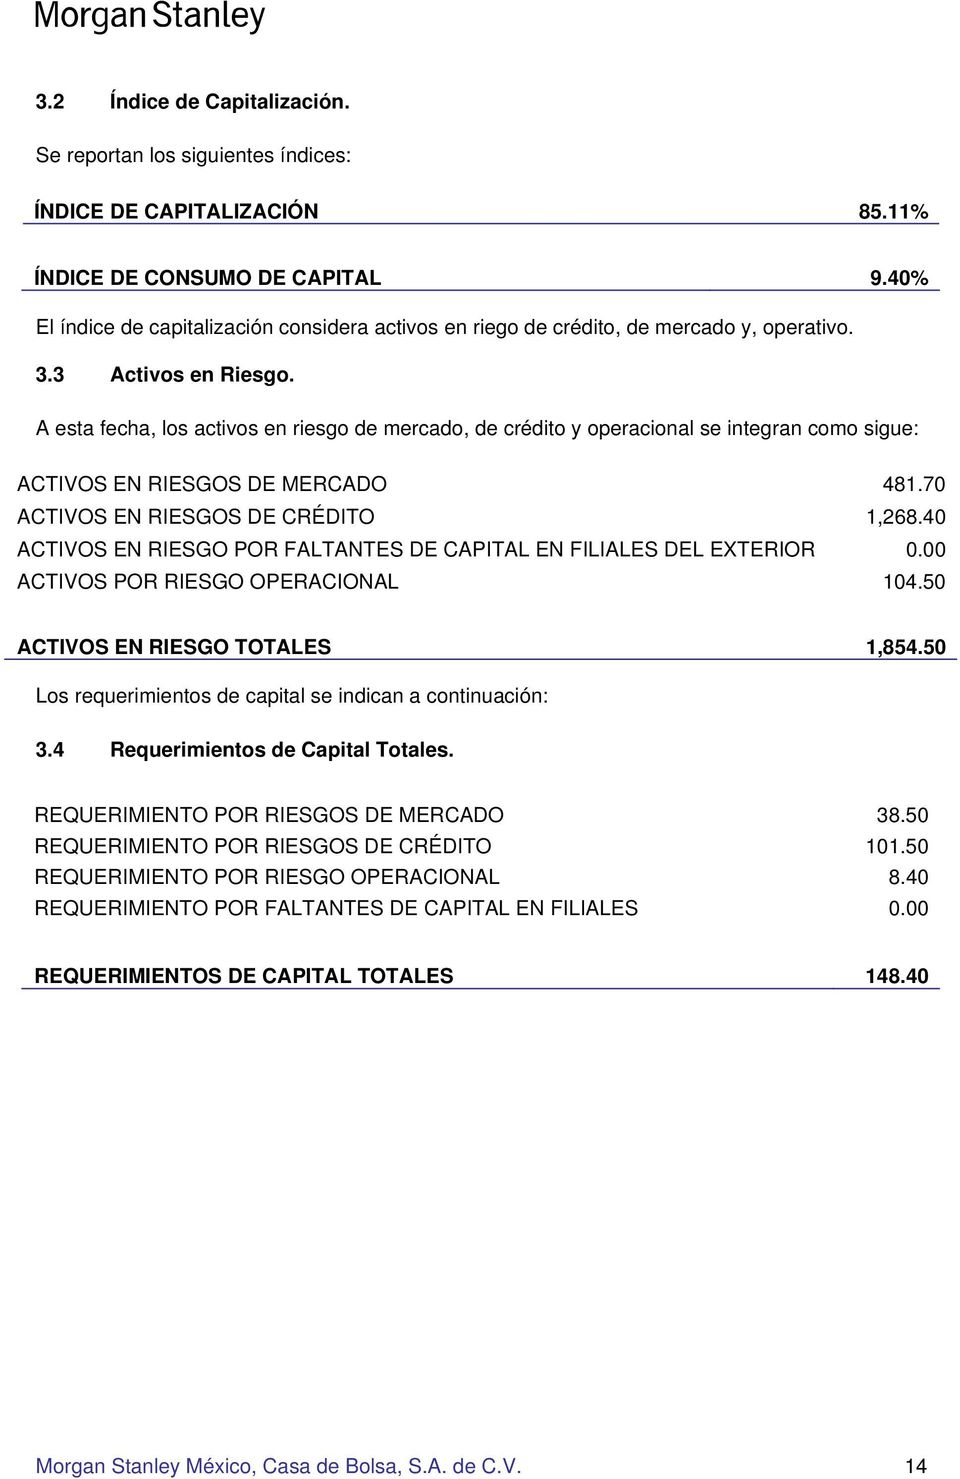 A esta fecha, los activos en riesgo de mercado, de crédito y operacional se integran como sigue: ACTIVOS EN RIESGOS DE MERCADO 481.70 ACTIVOS EN RIESGOS DE CRÉDITO 1,268.